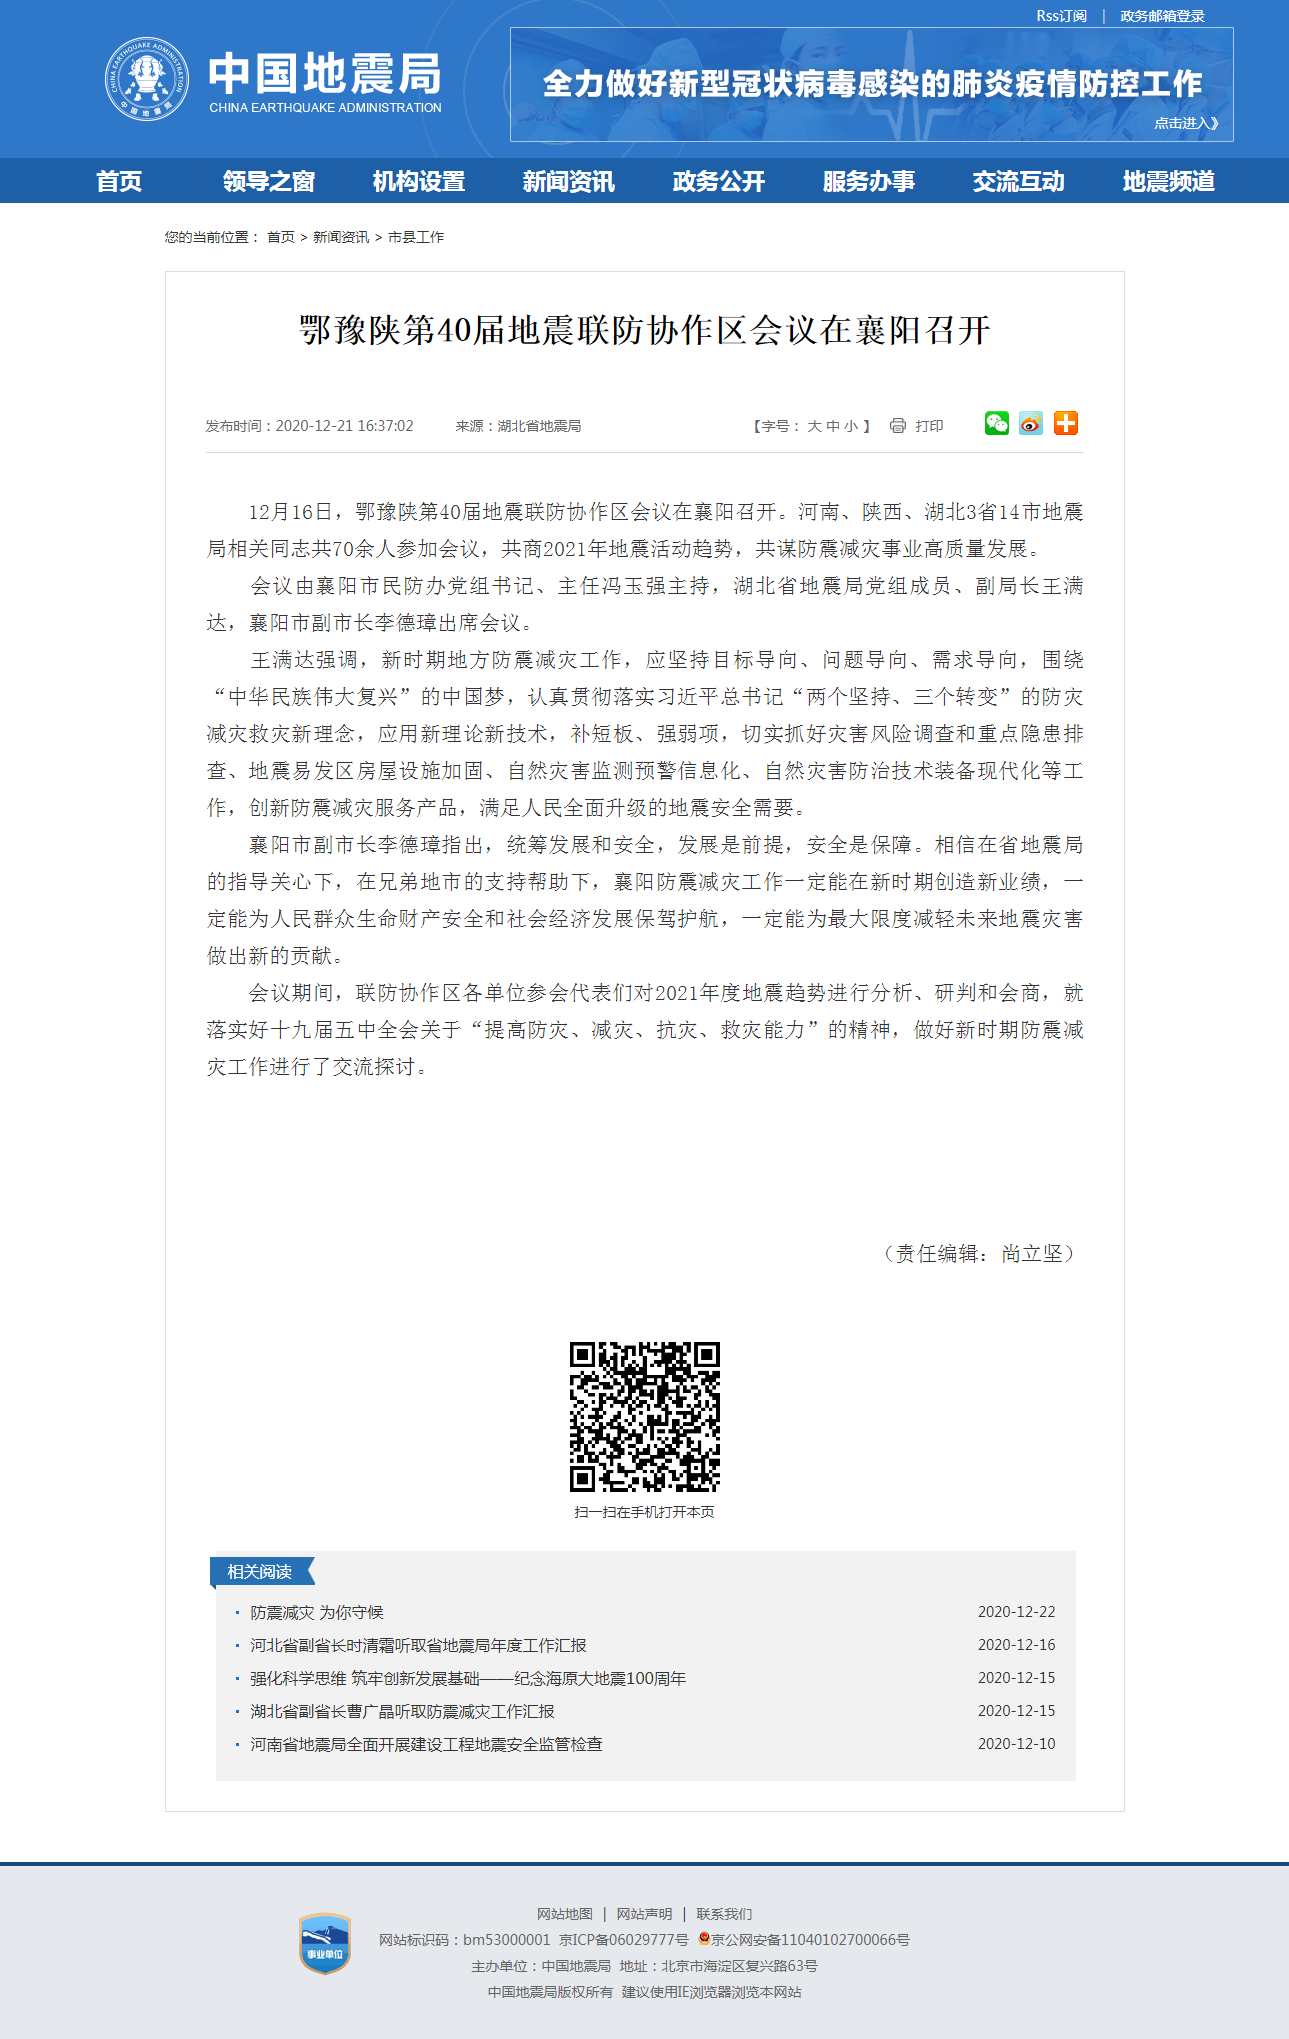 鄂豫陕第40届地震联防协作区会议在襄阳召开.png